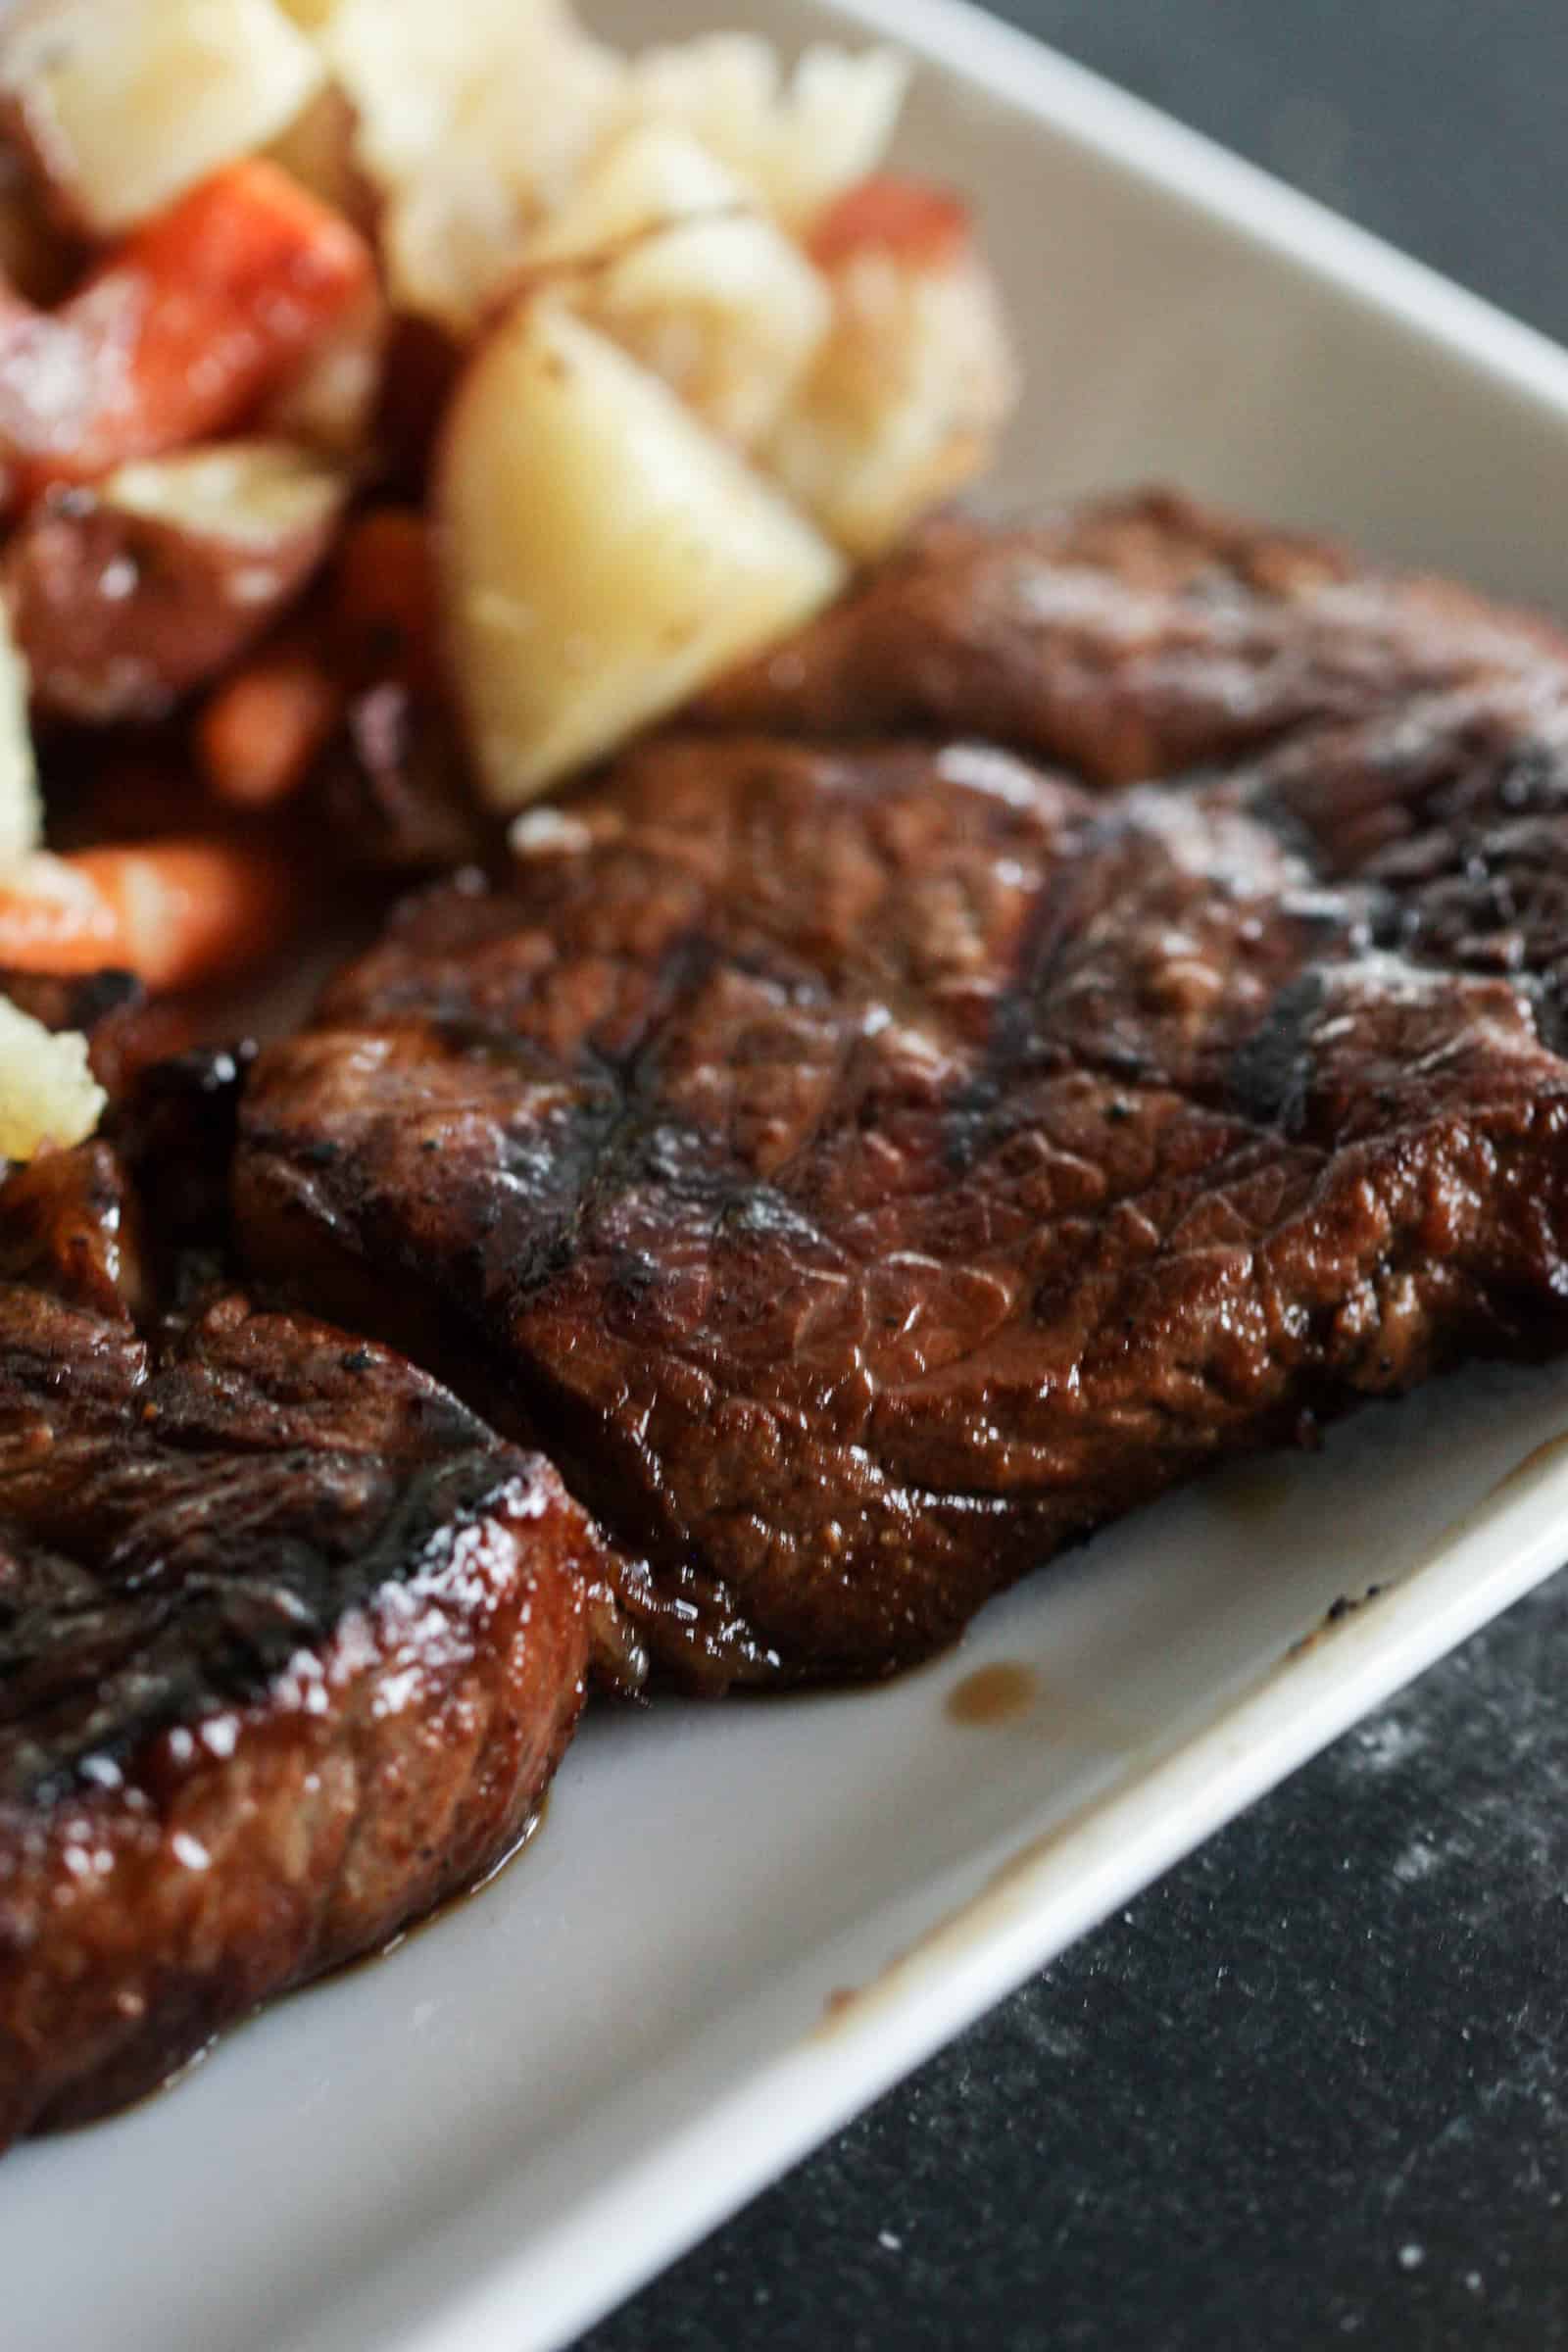 Pan Seared Steak Recipe (Steakhouse Quality!) - NatashasKitchen.com